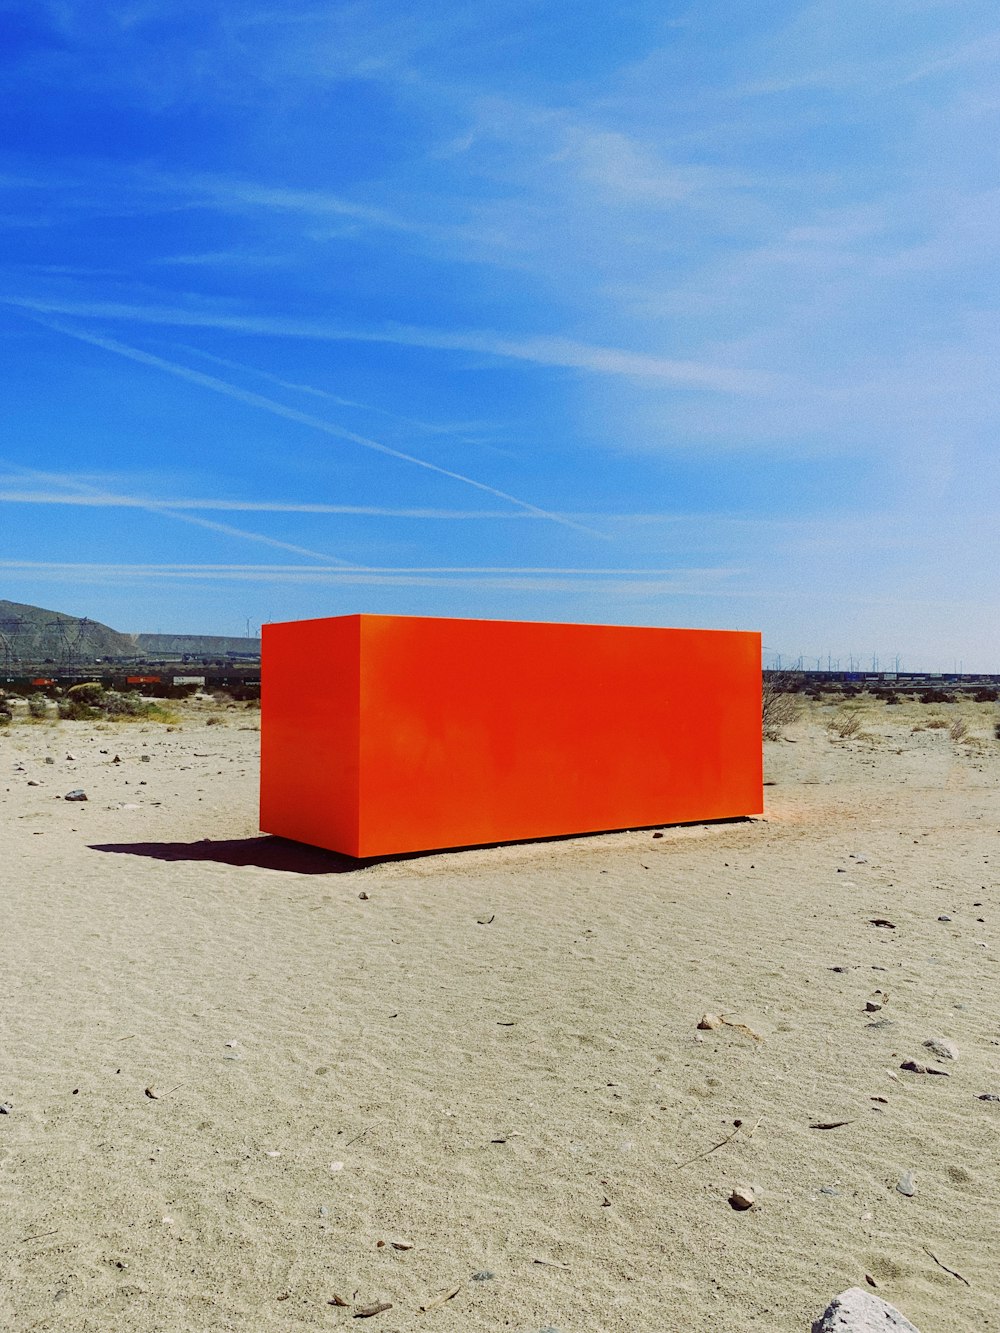 Conteneur rectangulaire rouge sur le sable à l’extérieur pendant la journée